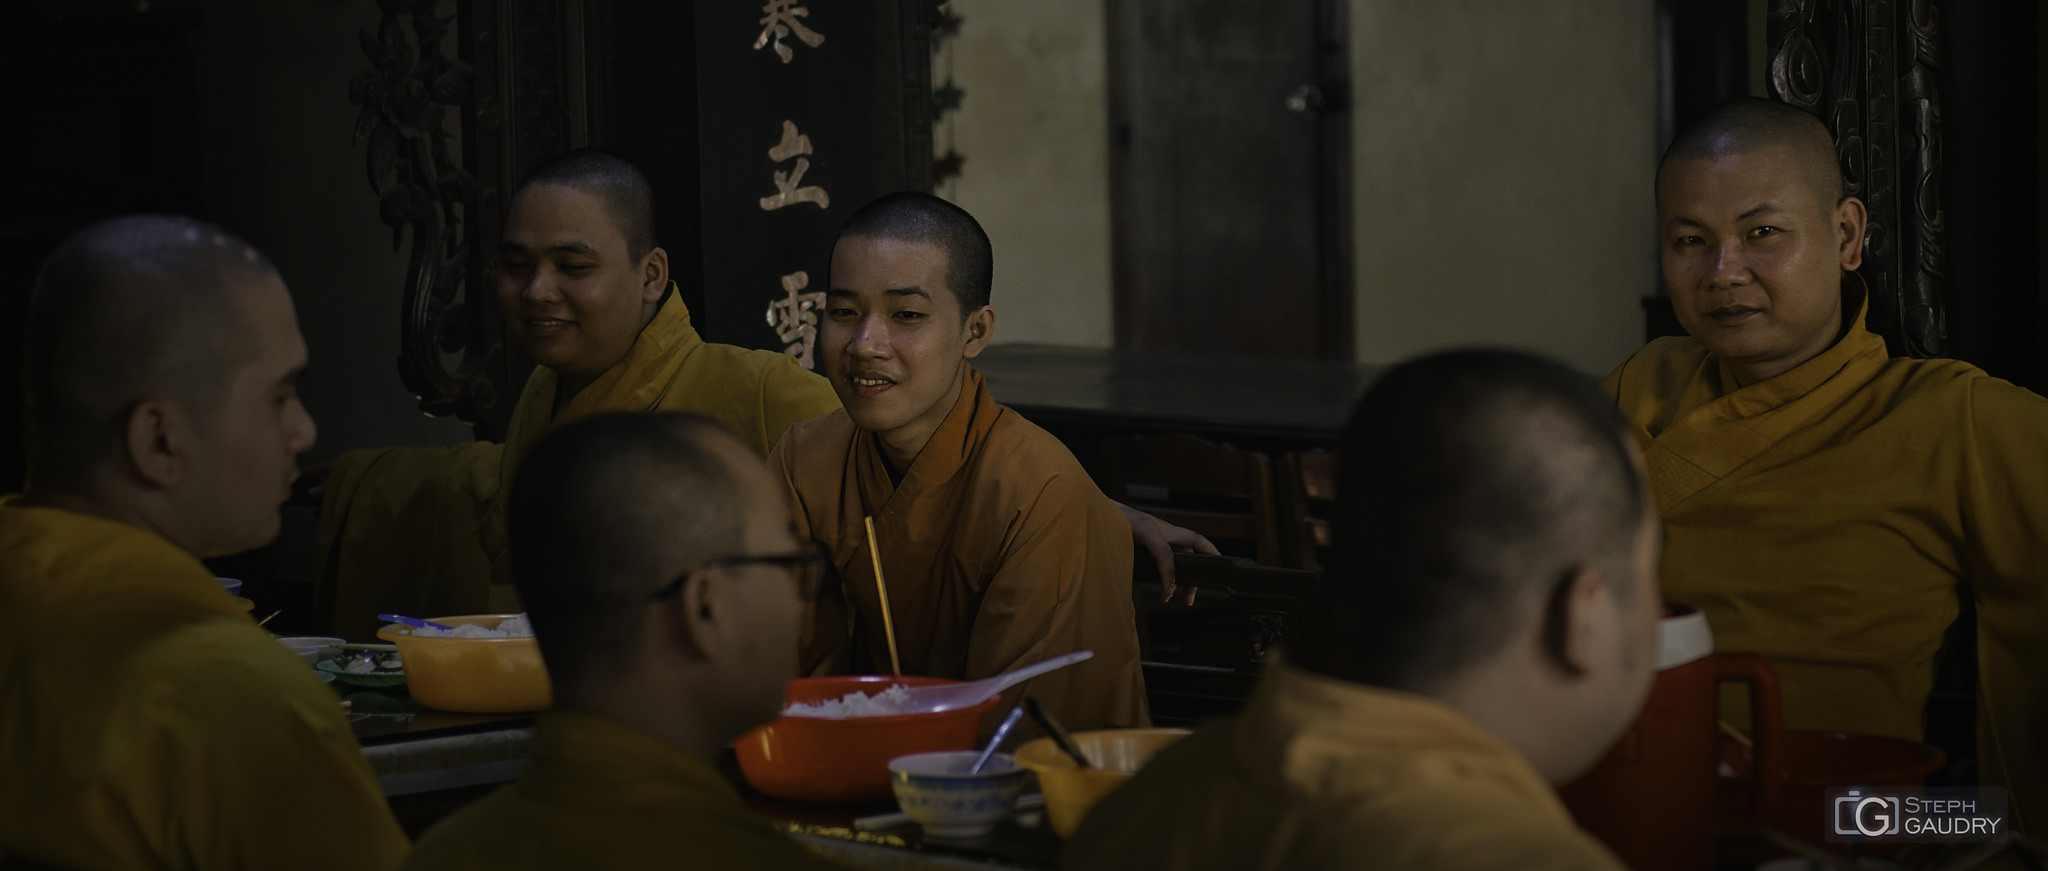 Le repas des moines bouddhistes [Klicken Sie hier, um die Diashow zu starten]